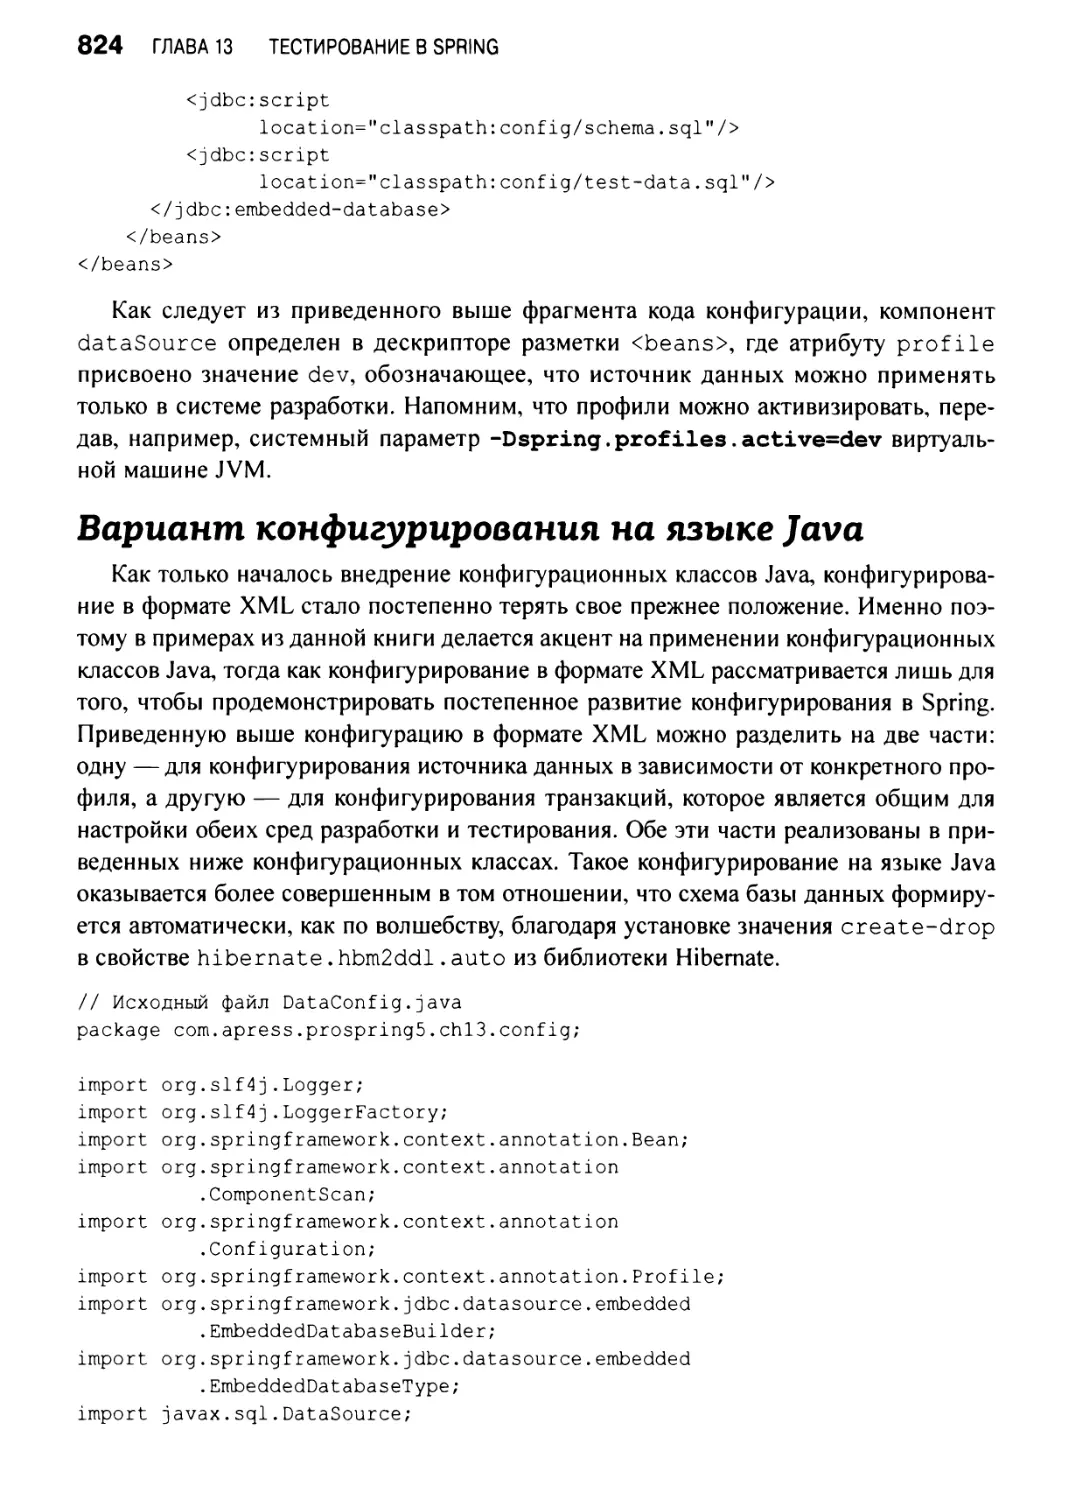 Вариант конфигурирования на языке Java